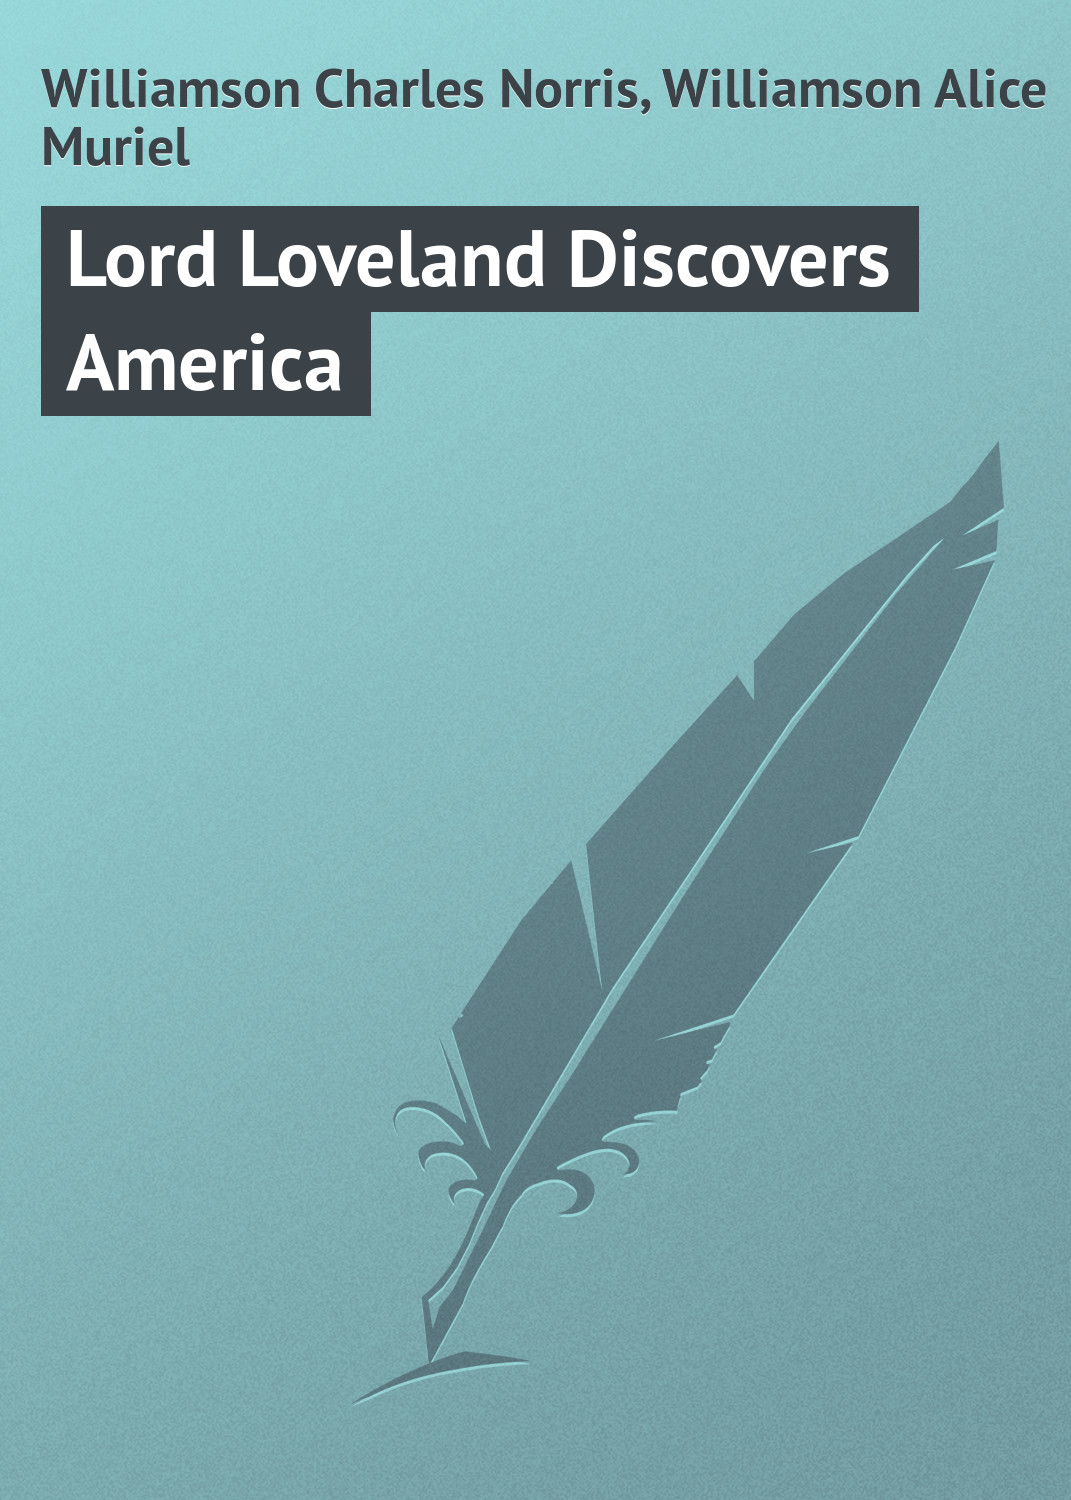 Книга Lord Loveland Discovers America из серии , созданная Charles Williamson, Alice Williamson, может относится к жанру Зарубежная классика. Стоимость электронной книги Lord Loveland Discovers America с идентификатором 23154331 составляет 5.99 руб.